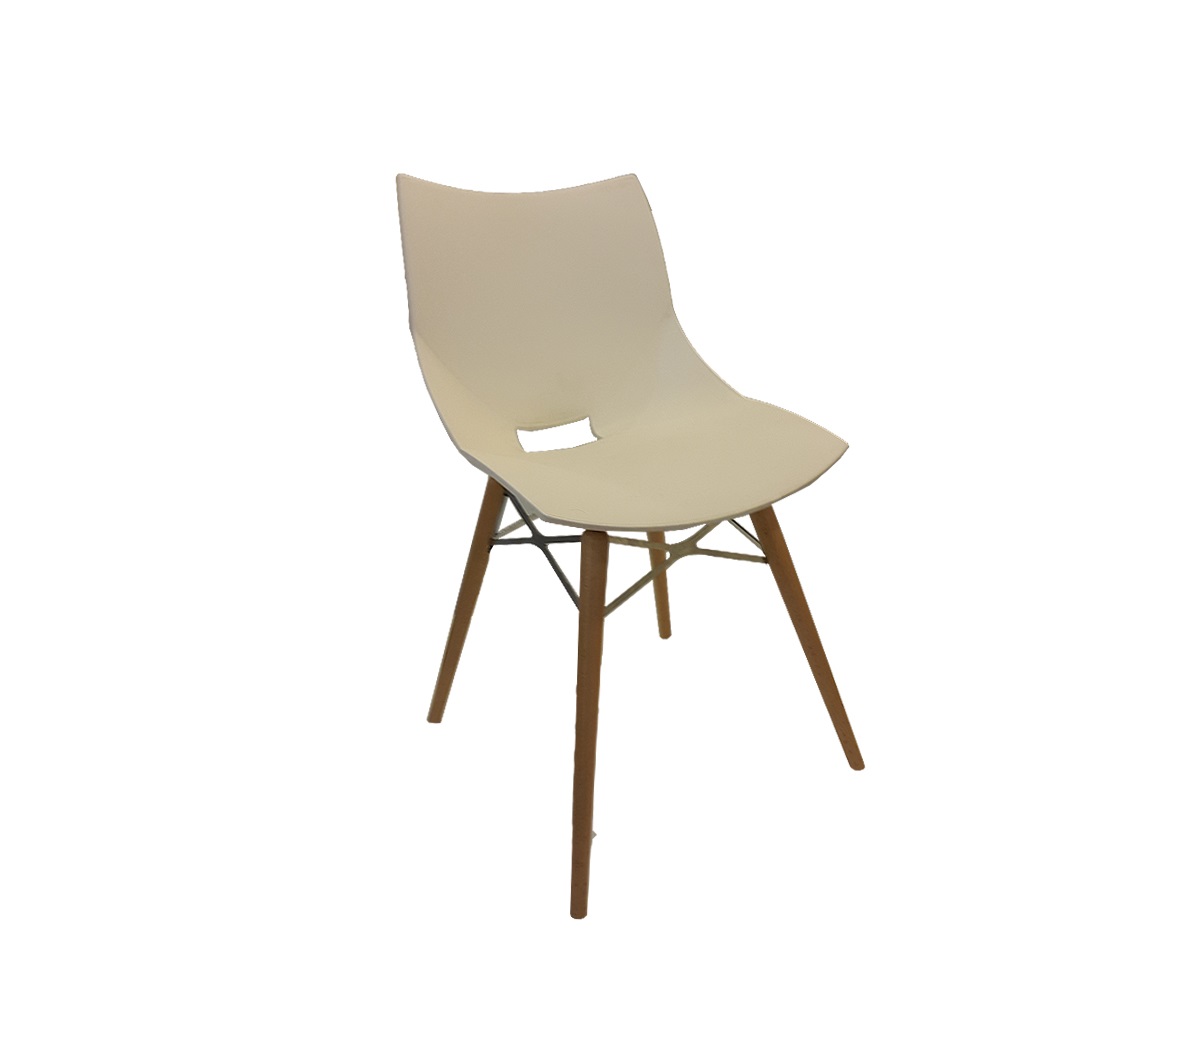 صندلی پایه چوبی نظری مدل شل-SHELL N831WR